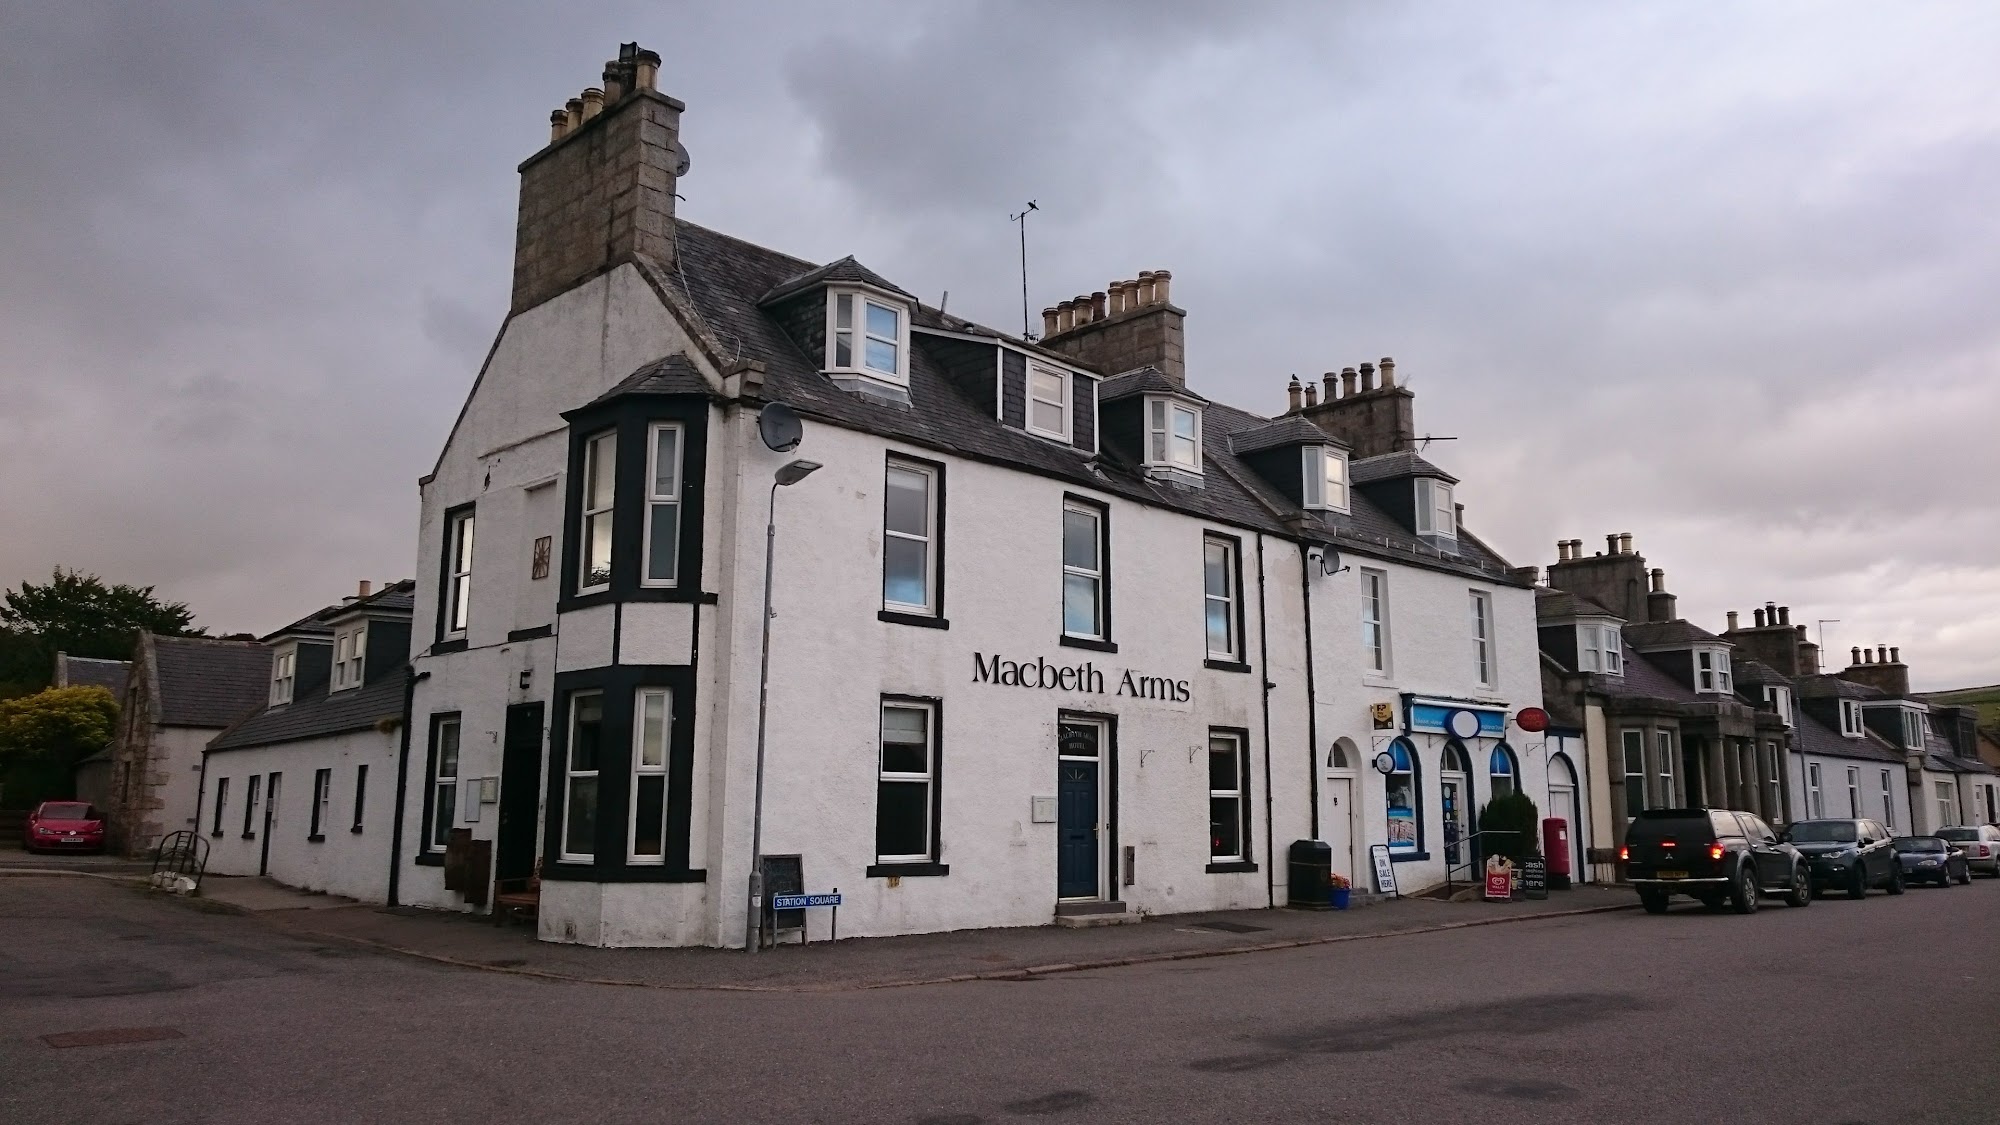 Macbeth Arms Hotel